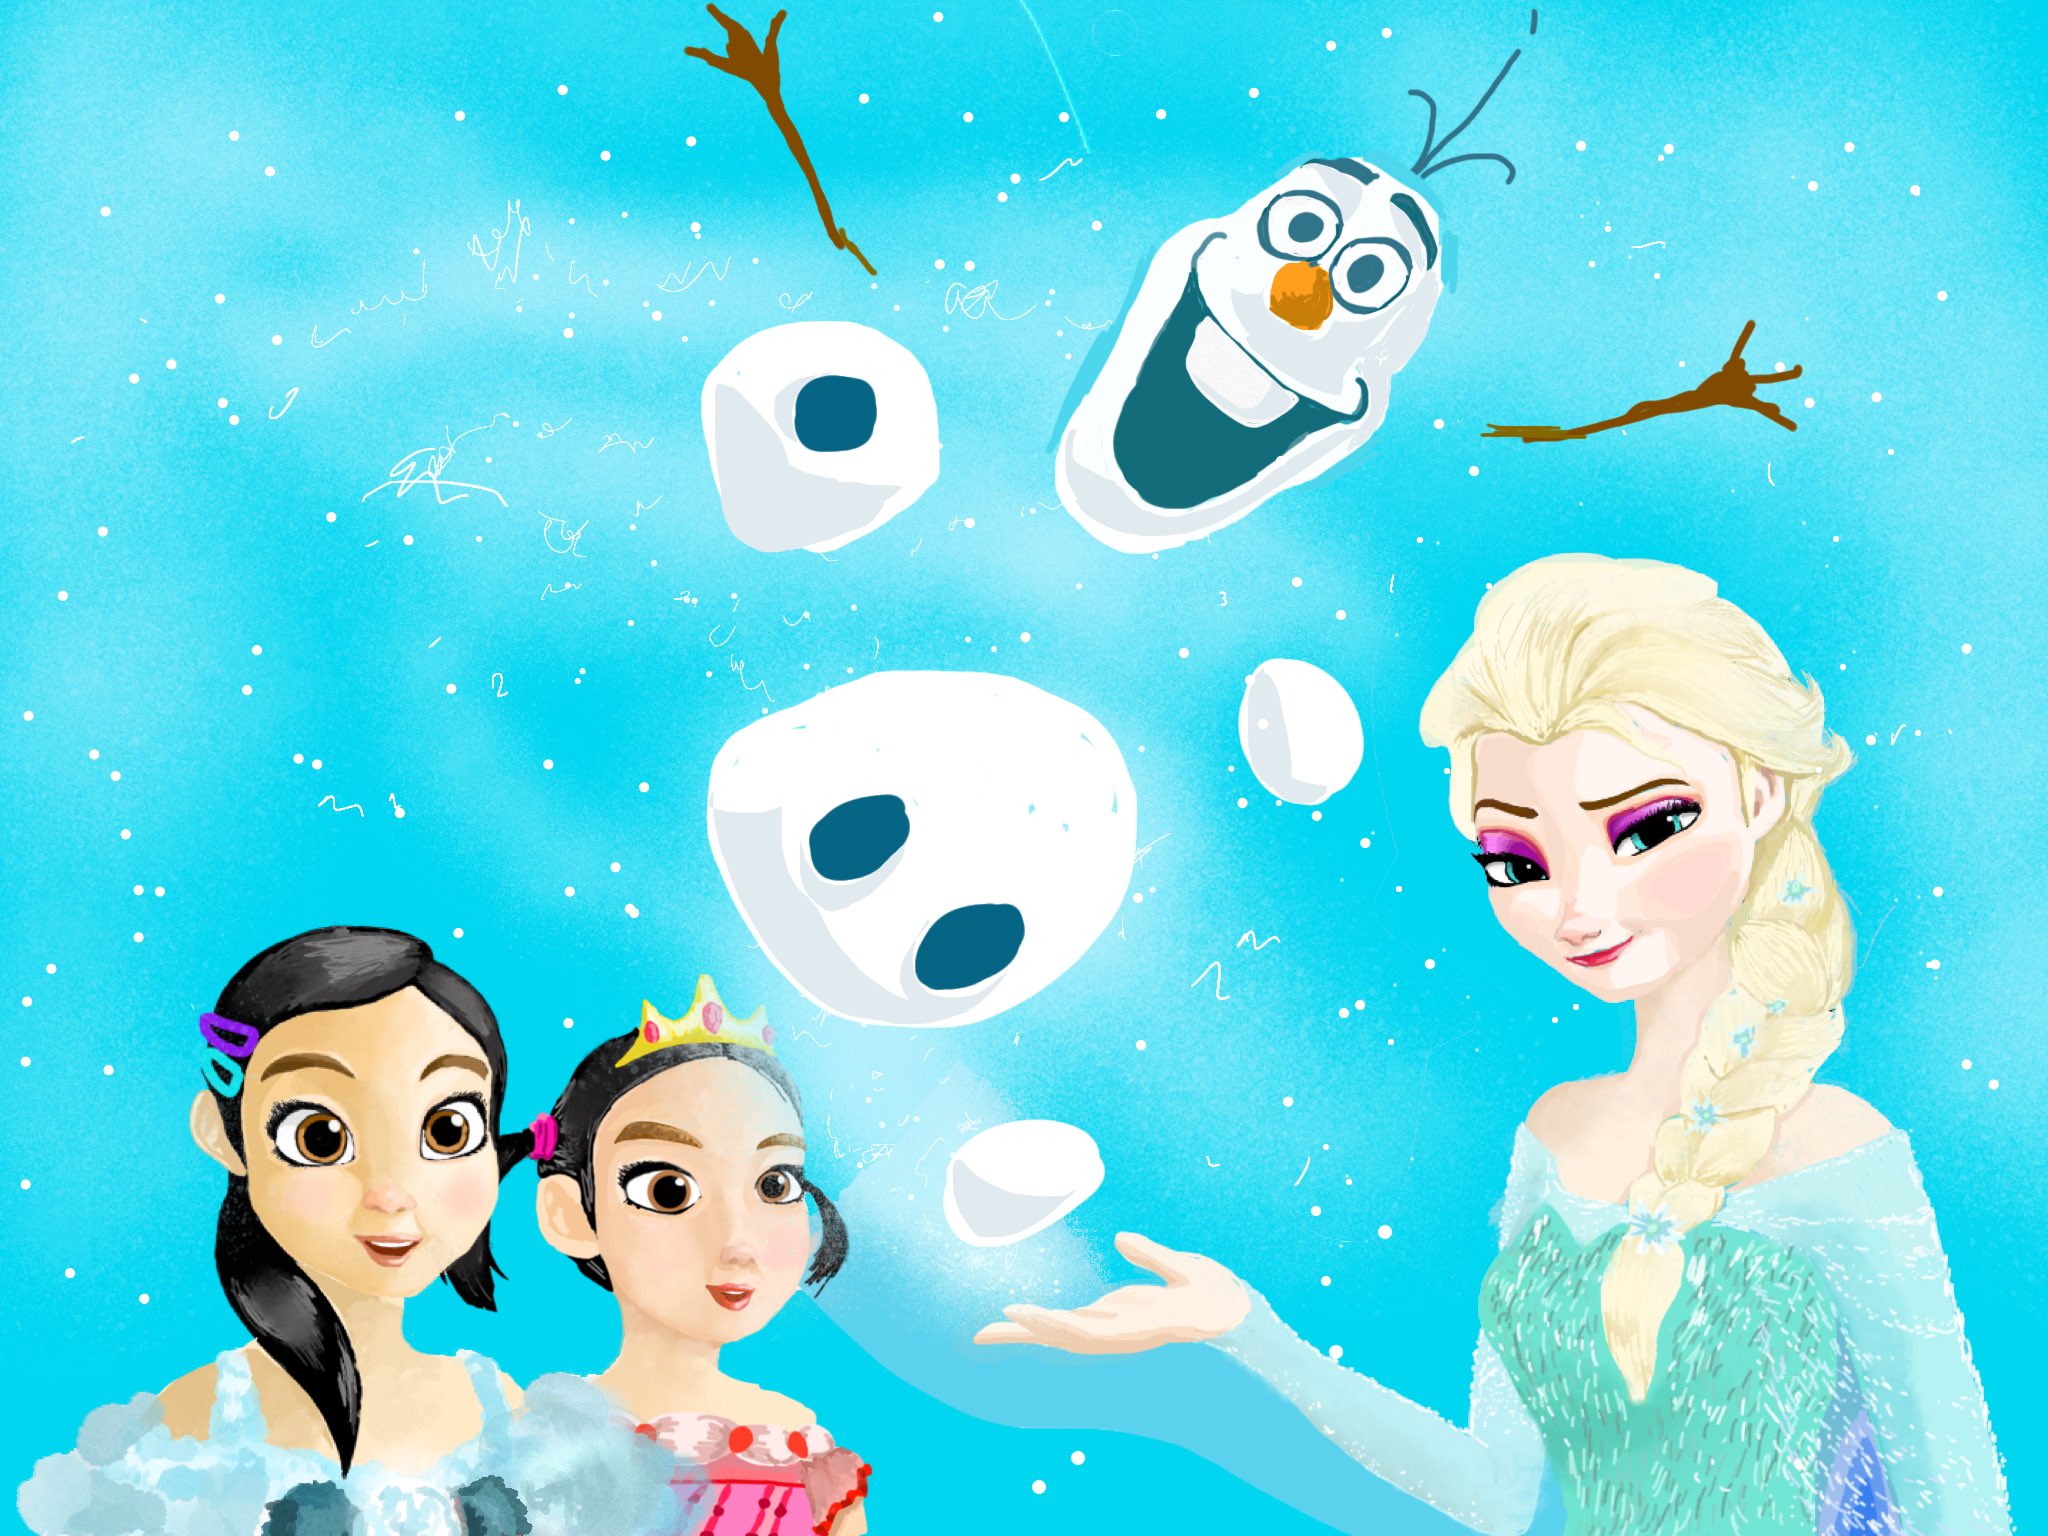 23 Ar Twitter インスタで依頼いただき描かせていただきました ディズニー Disney Frozen アナ雪 オラフ かわいい 雪 描いてみた Drawing Japan フォロー 映画 子供 イラスト 絵描きさんと繋がりたい アナ雪2 Cute Movie Illustrate かっこいい